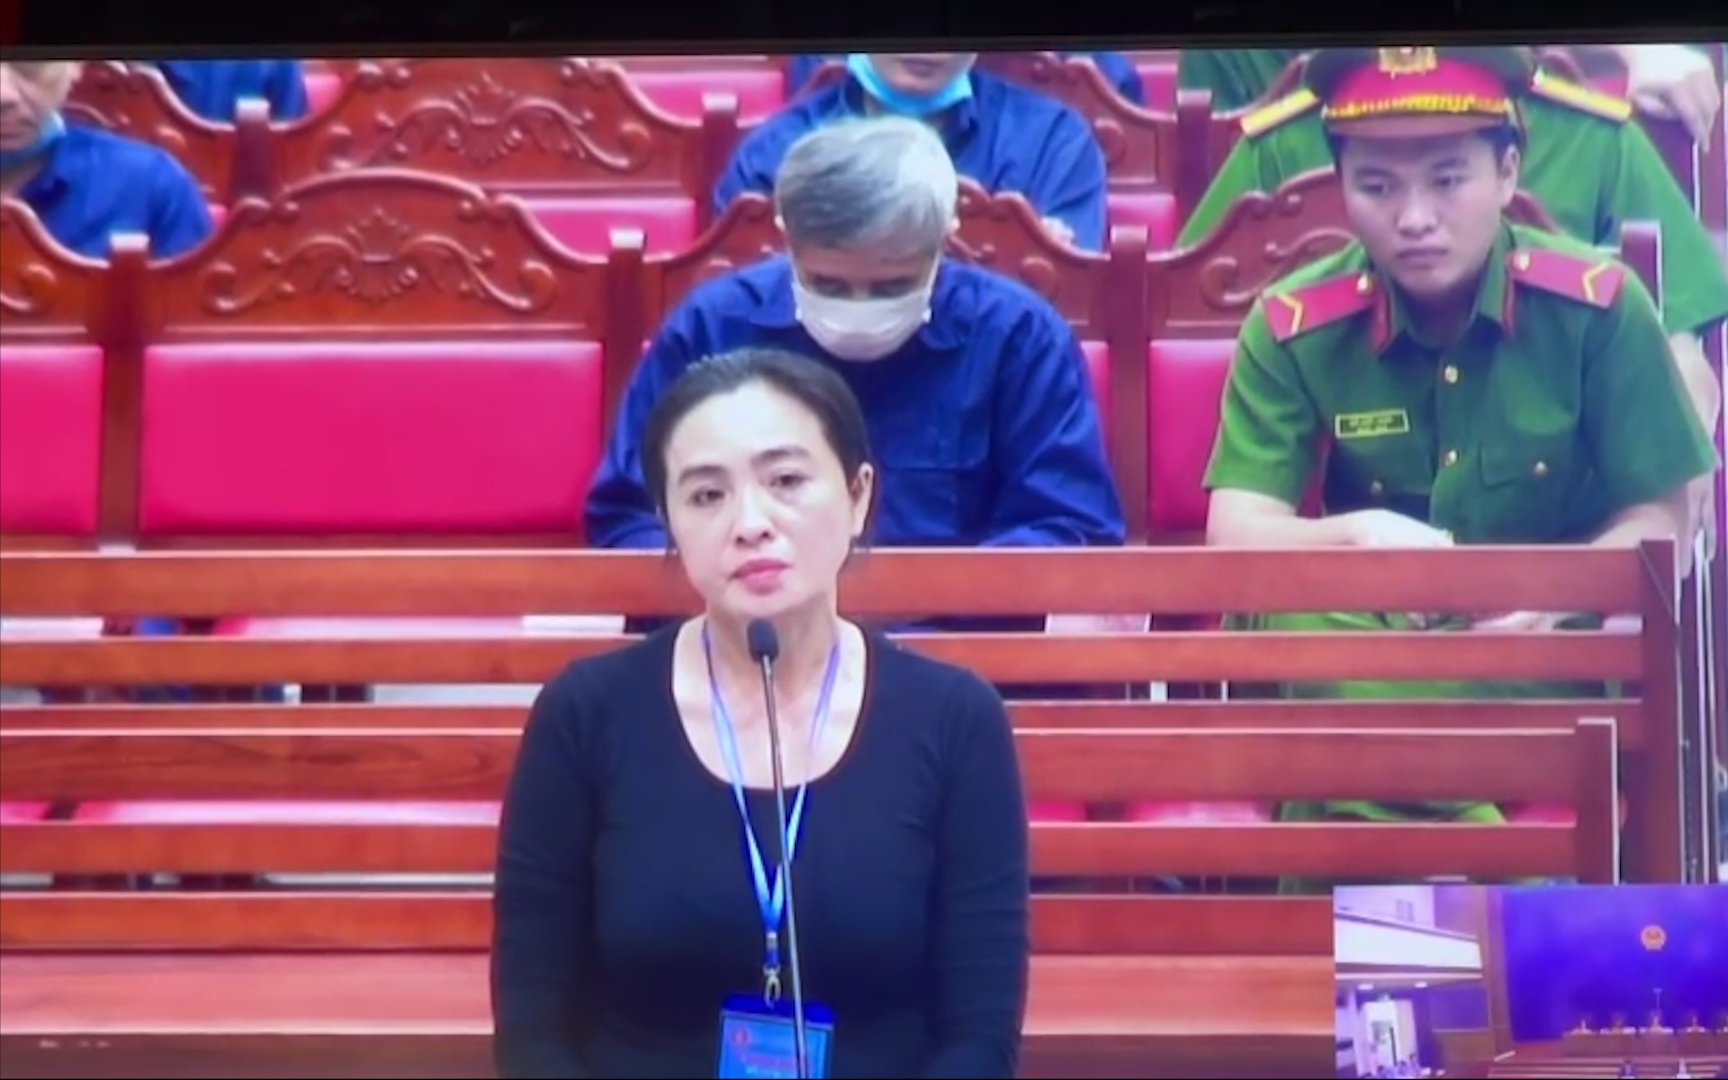 Đại án xăng lậu: "Chân dài" Trần Ngọc Thanh khai chỉ quan hệ “bạn bè chút xíu” với ông trùm Nguyễn Hữu Tứ